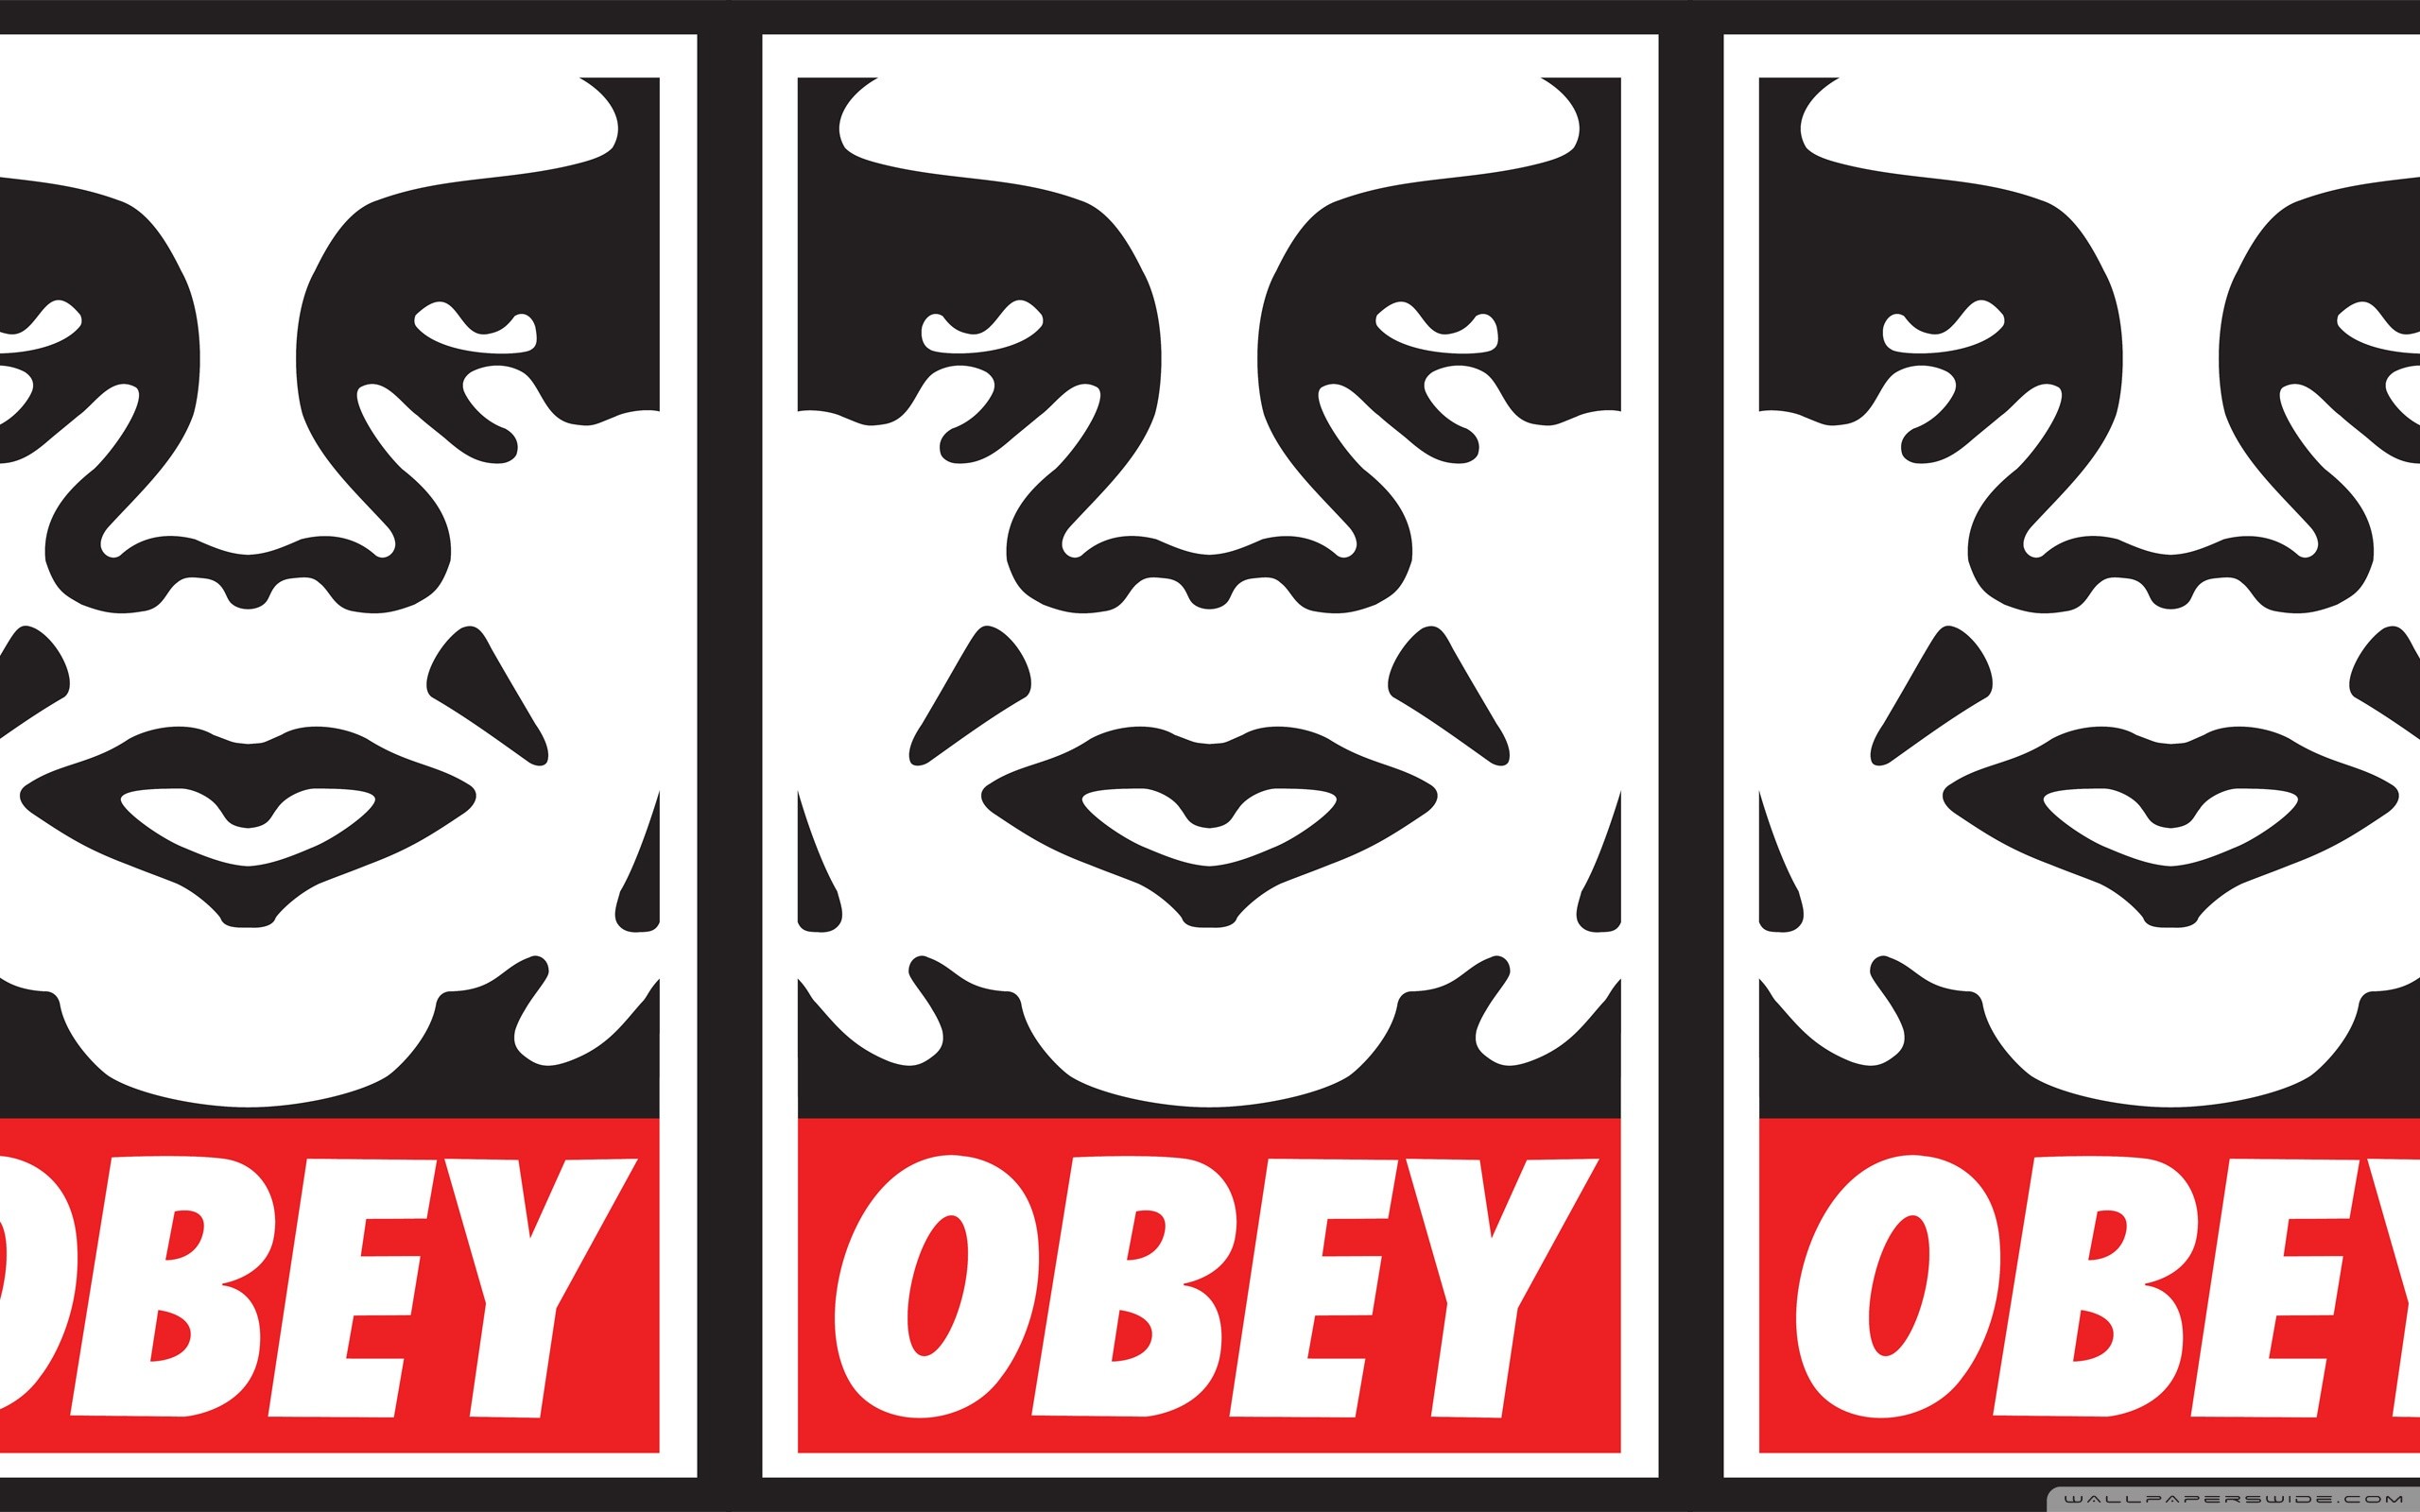 Obey HD wallpapers | Pxfuel